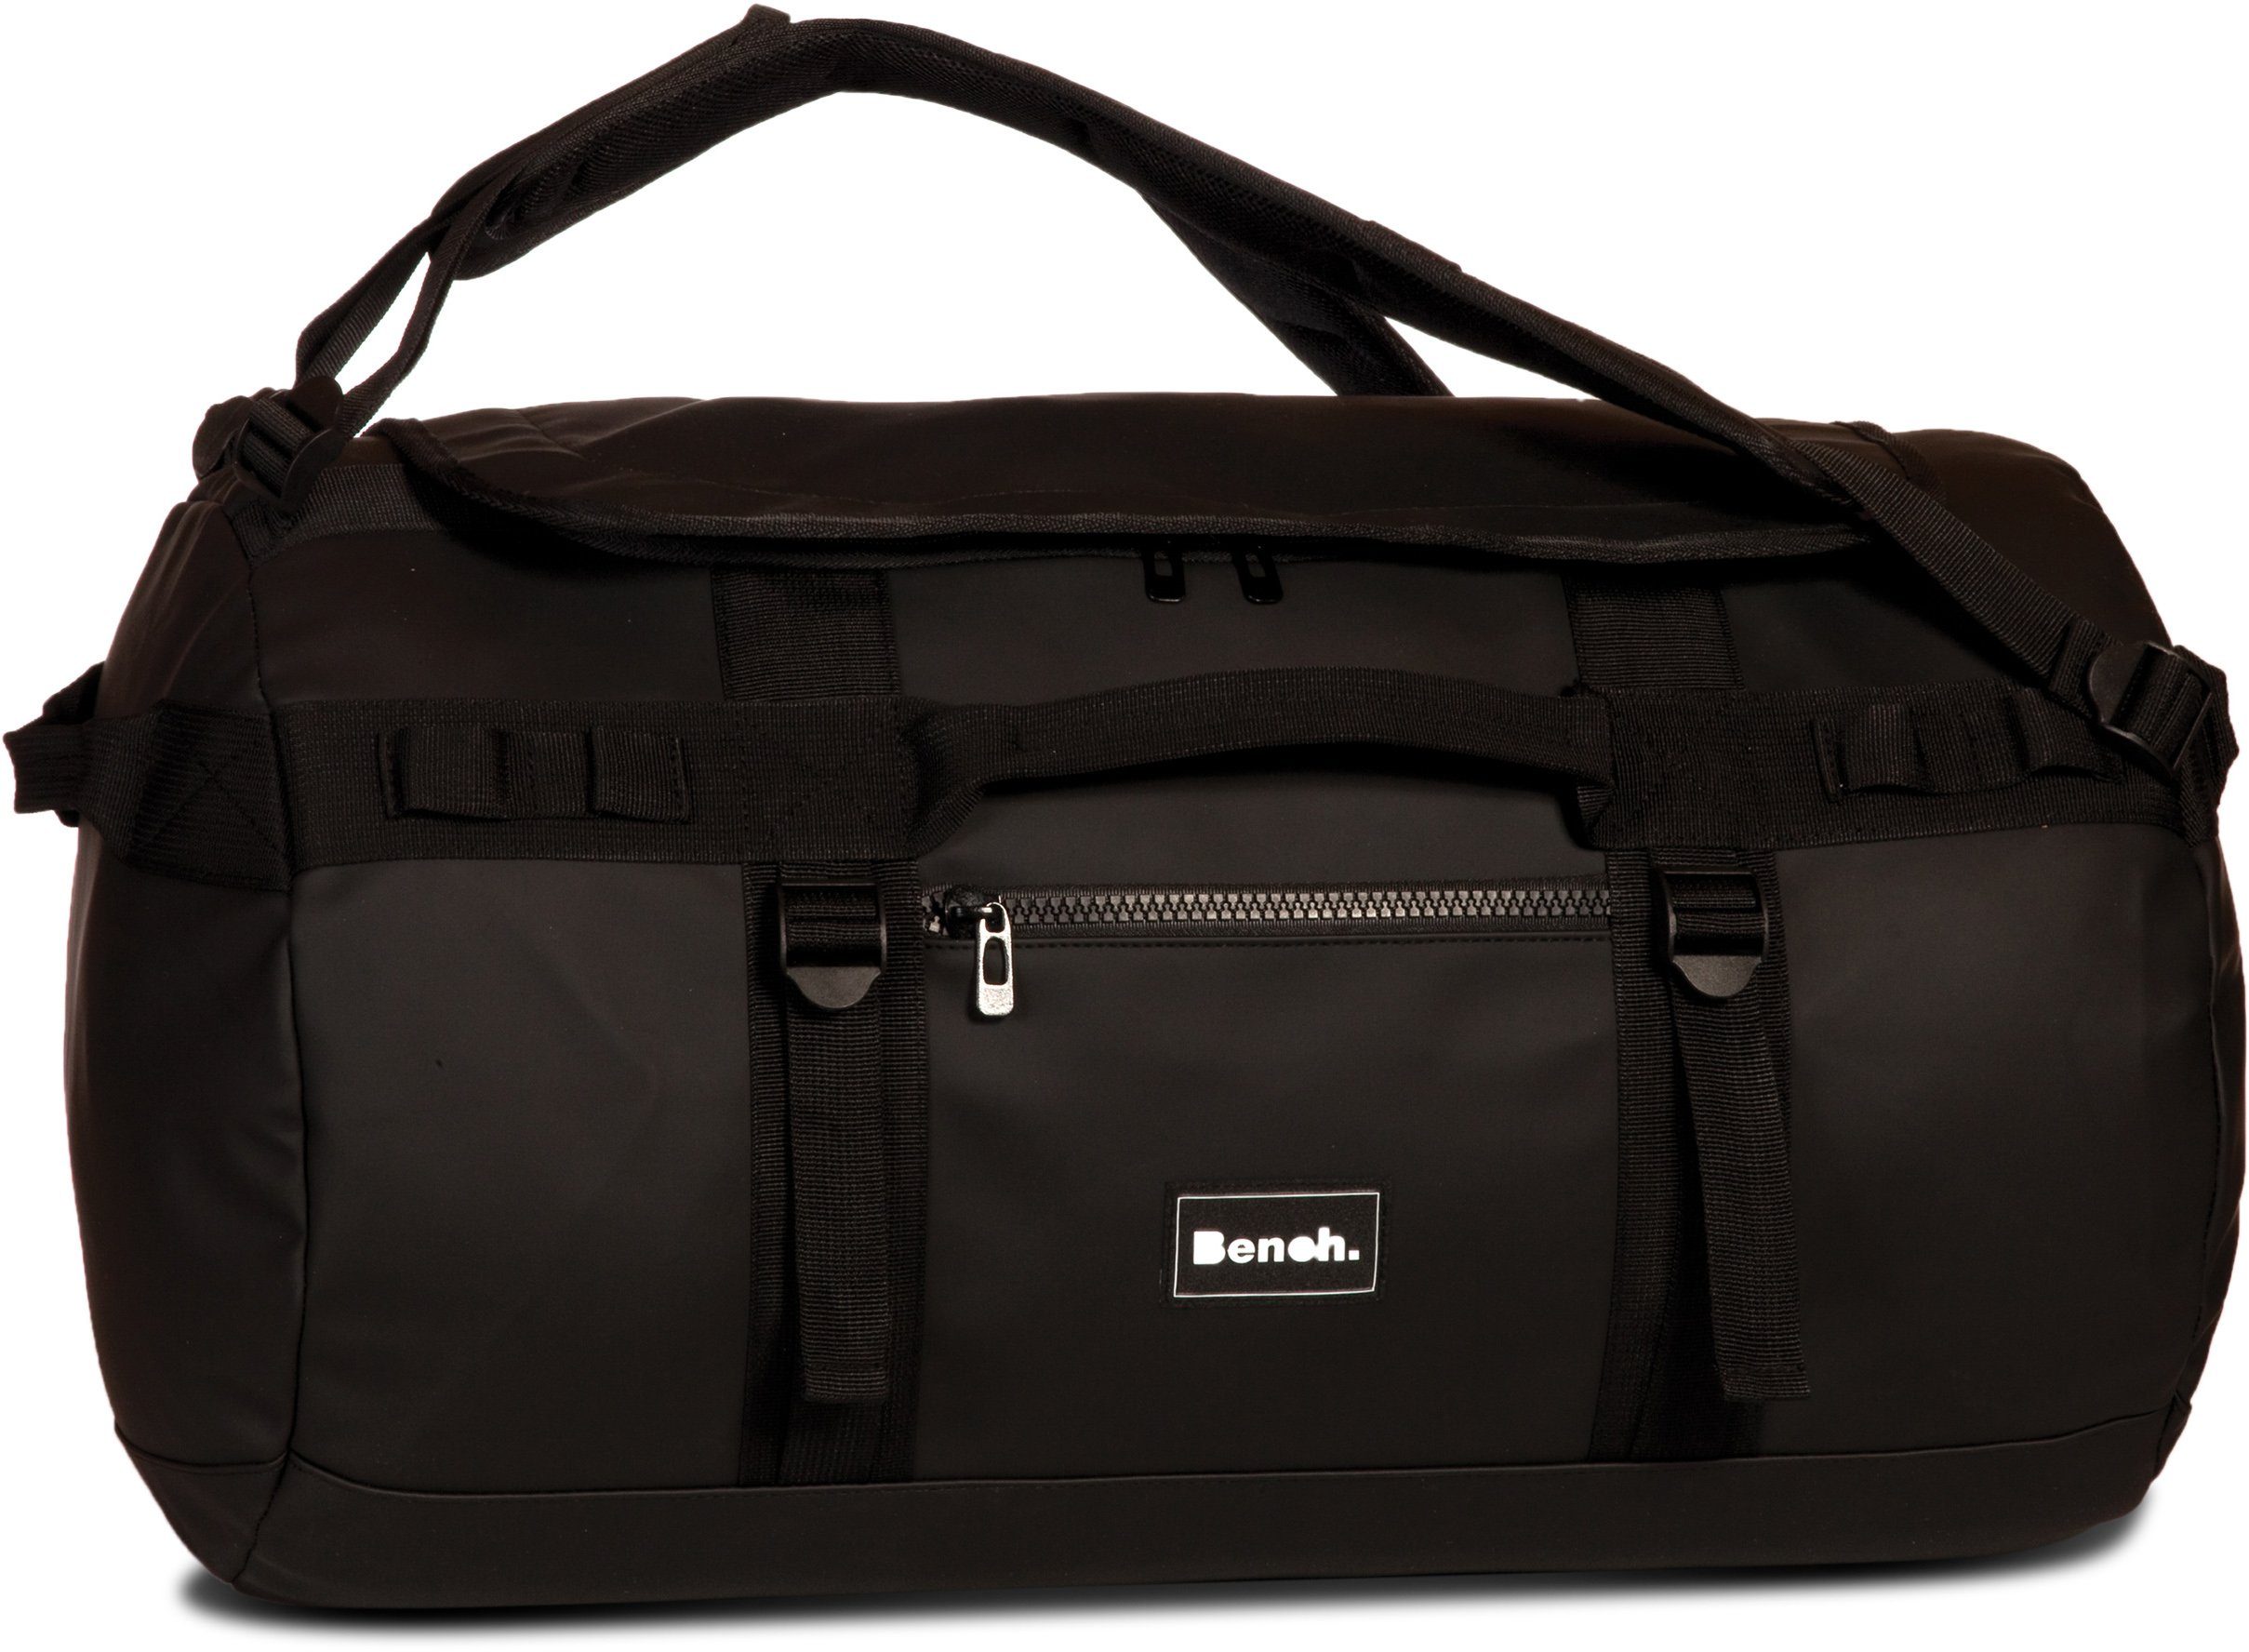 Befürworten Bench. Reisetasche schwarz, Rucksackfunktion; mit wasserabweisendem aus Hydro, Material